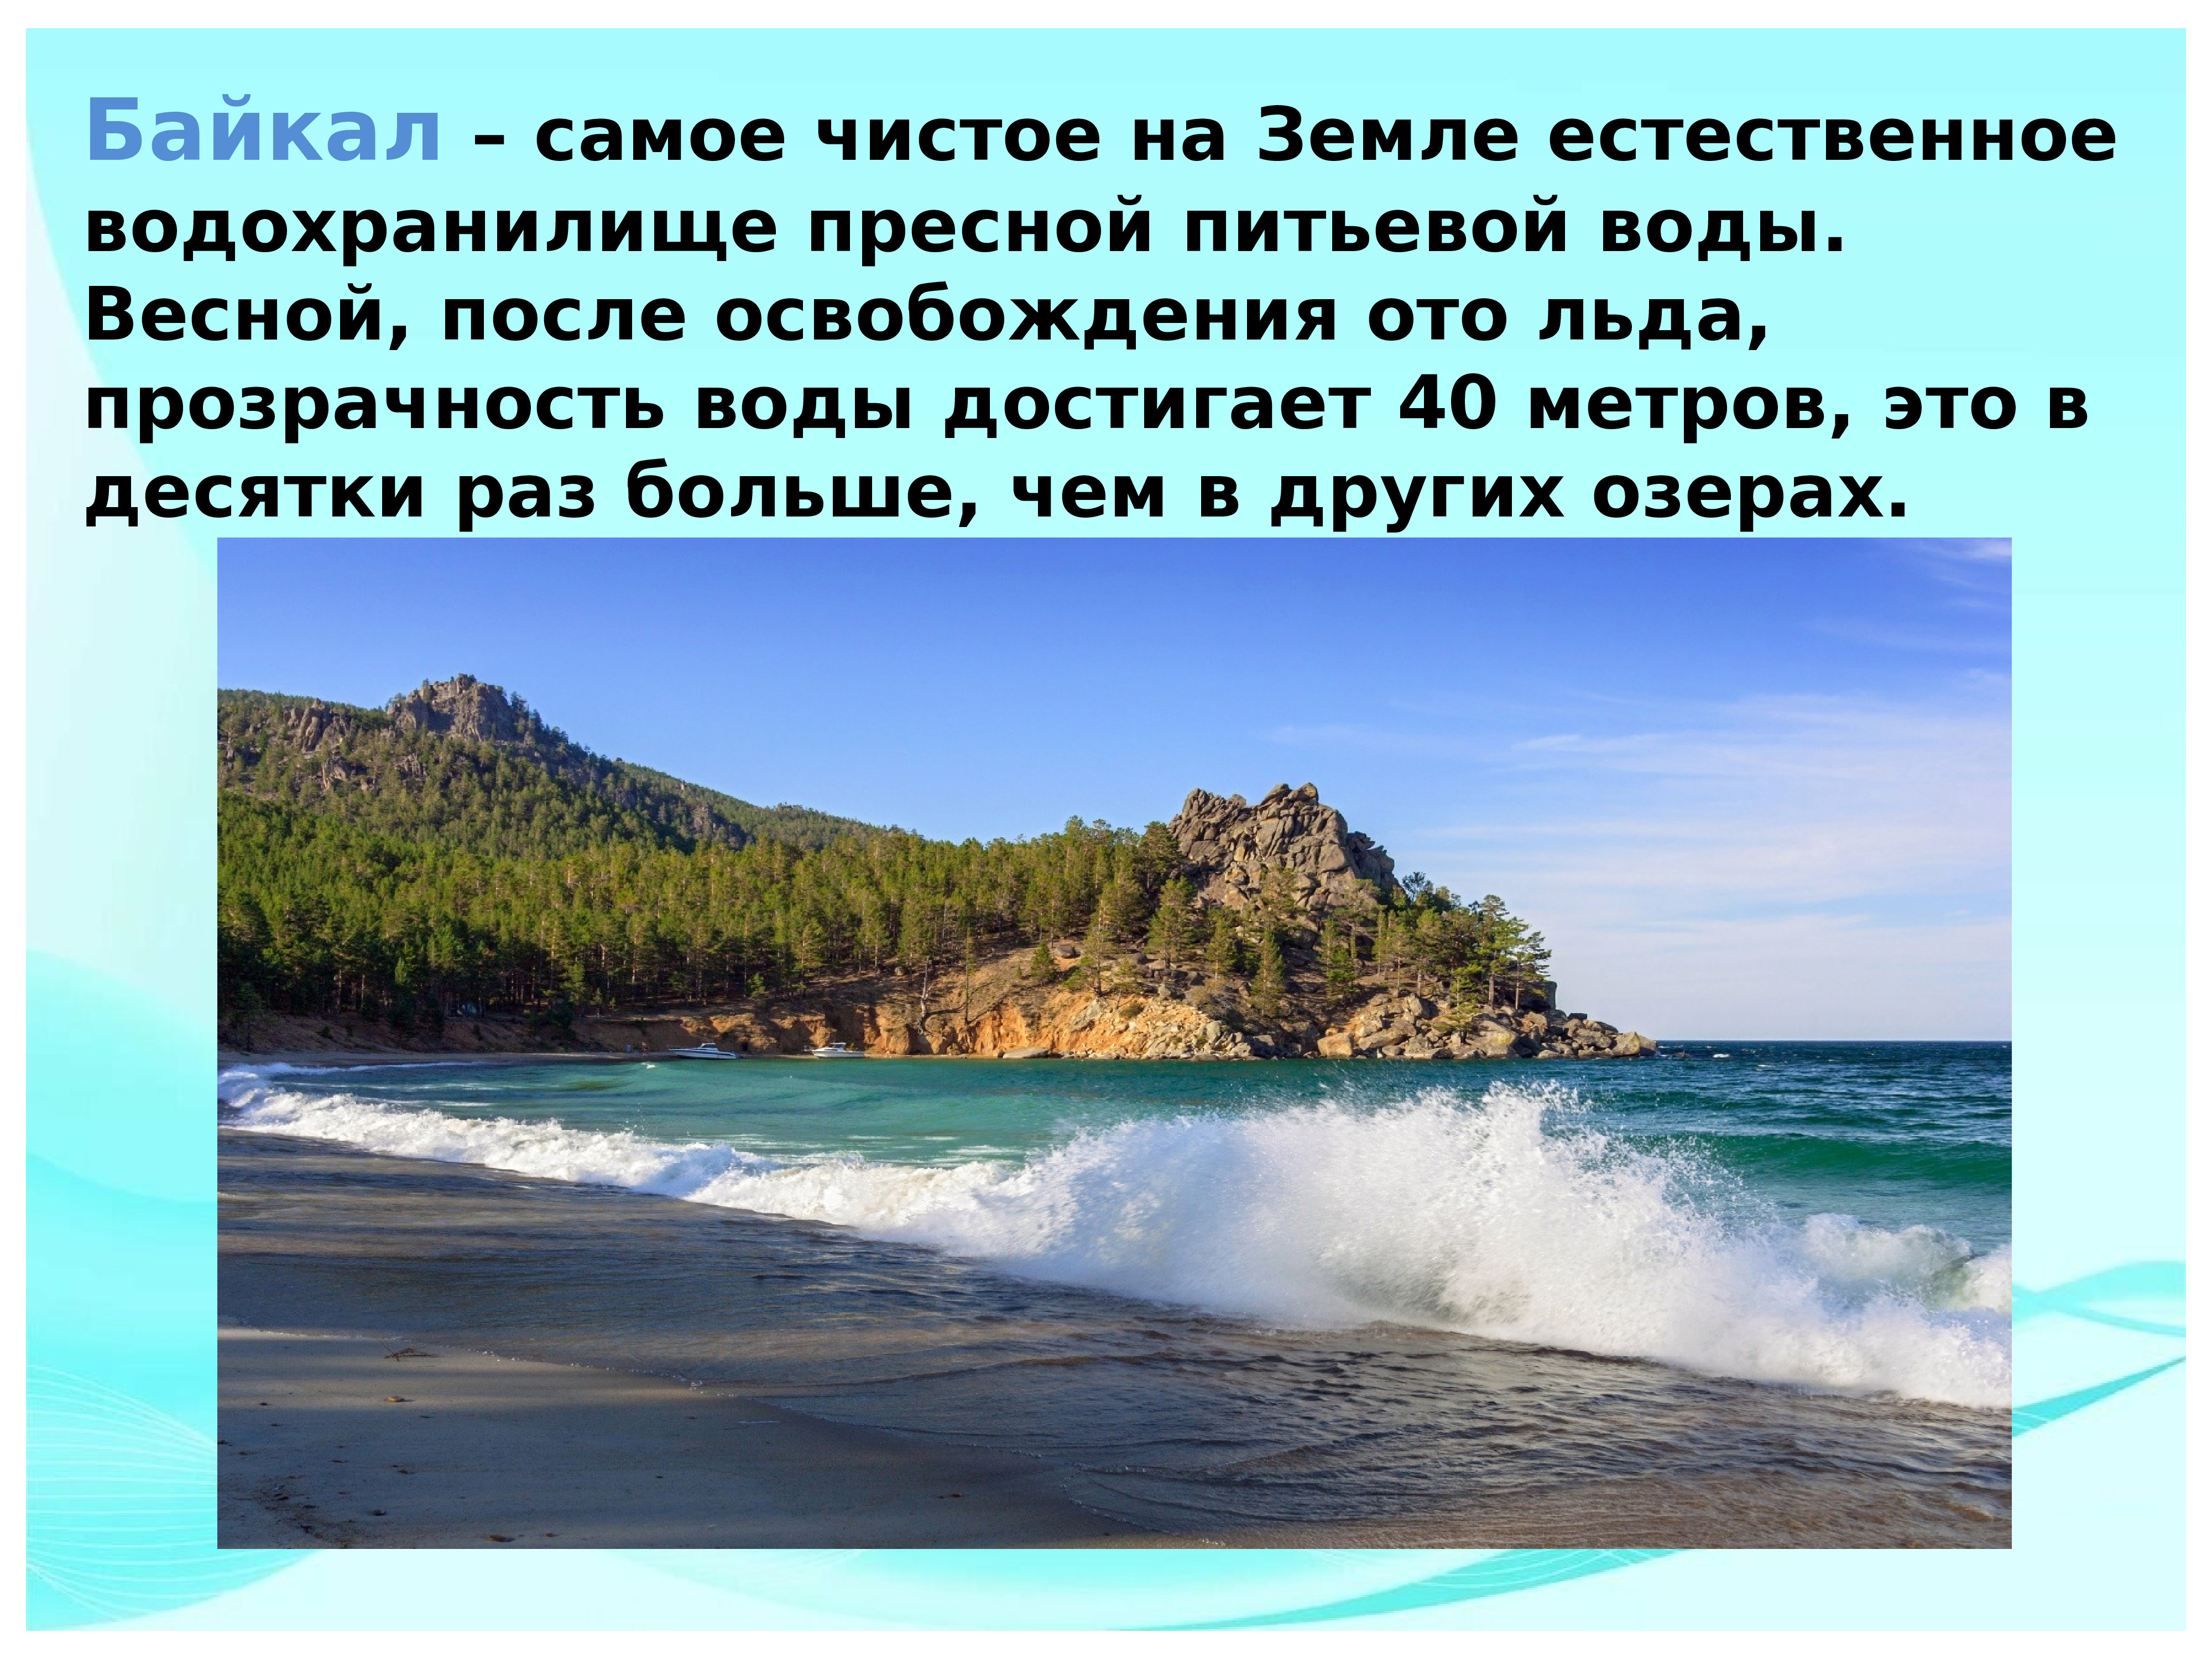 Интересные факты об озере Байкал для детей 3 класса